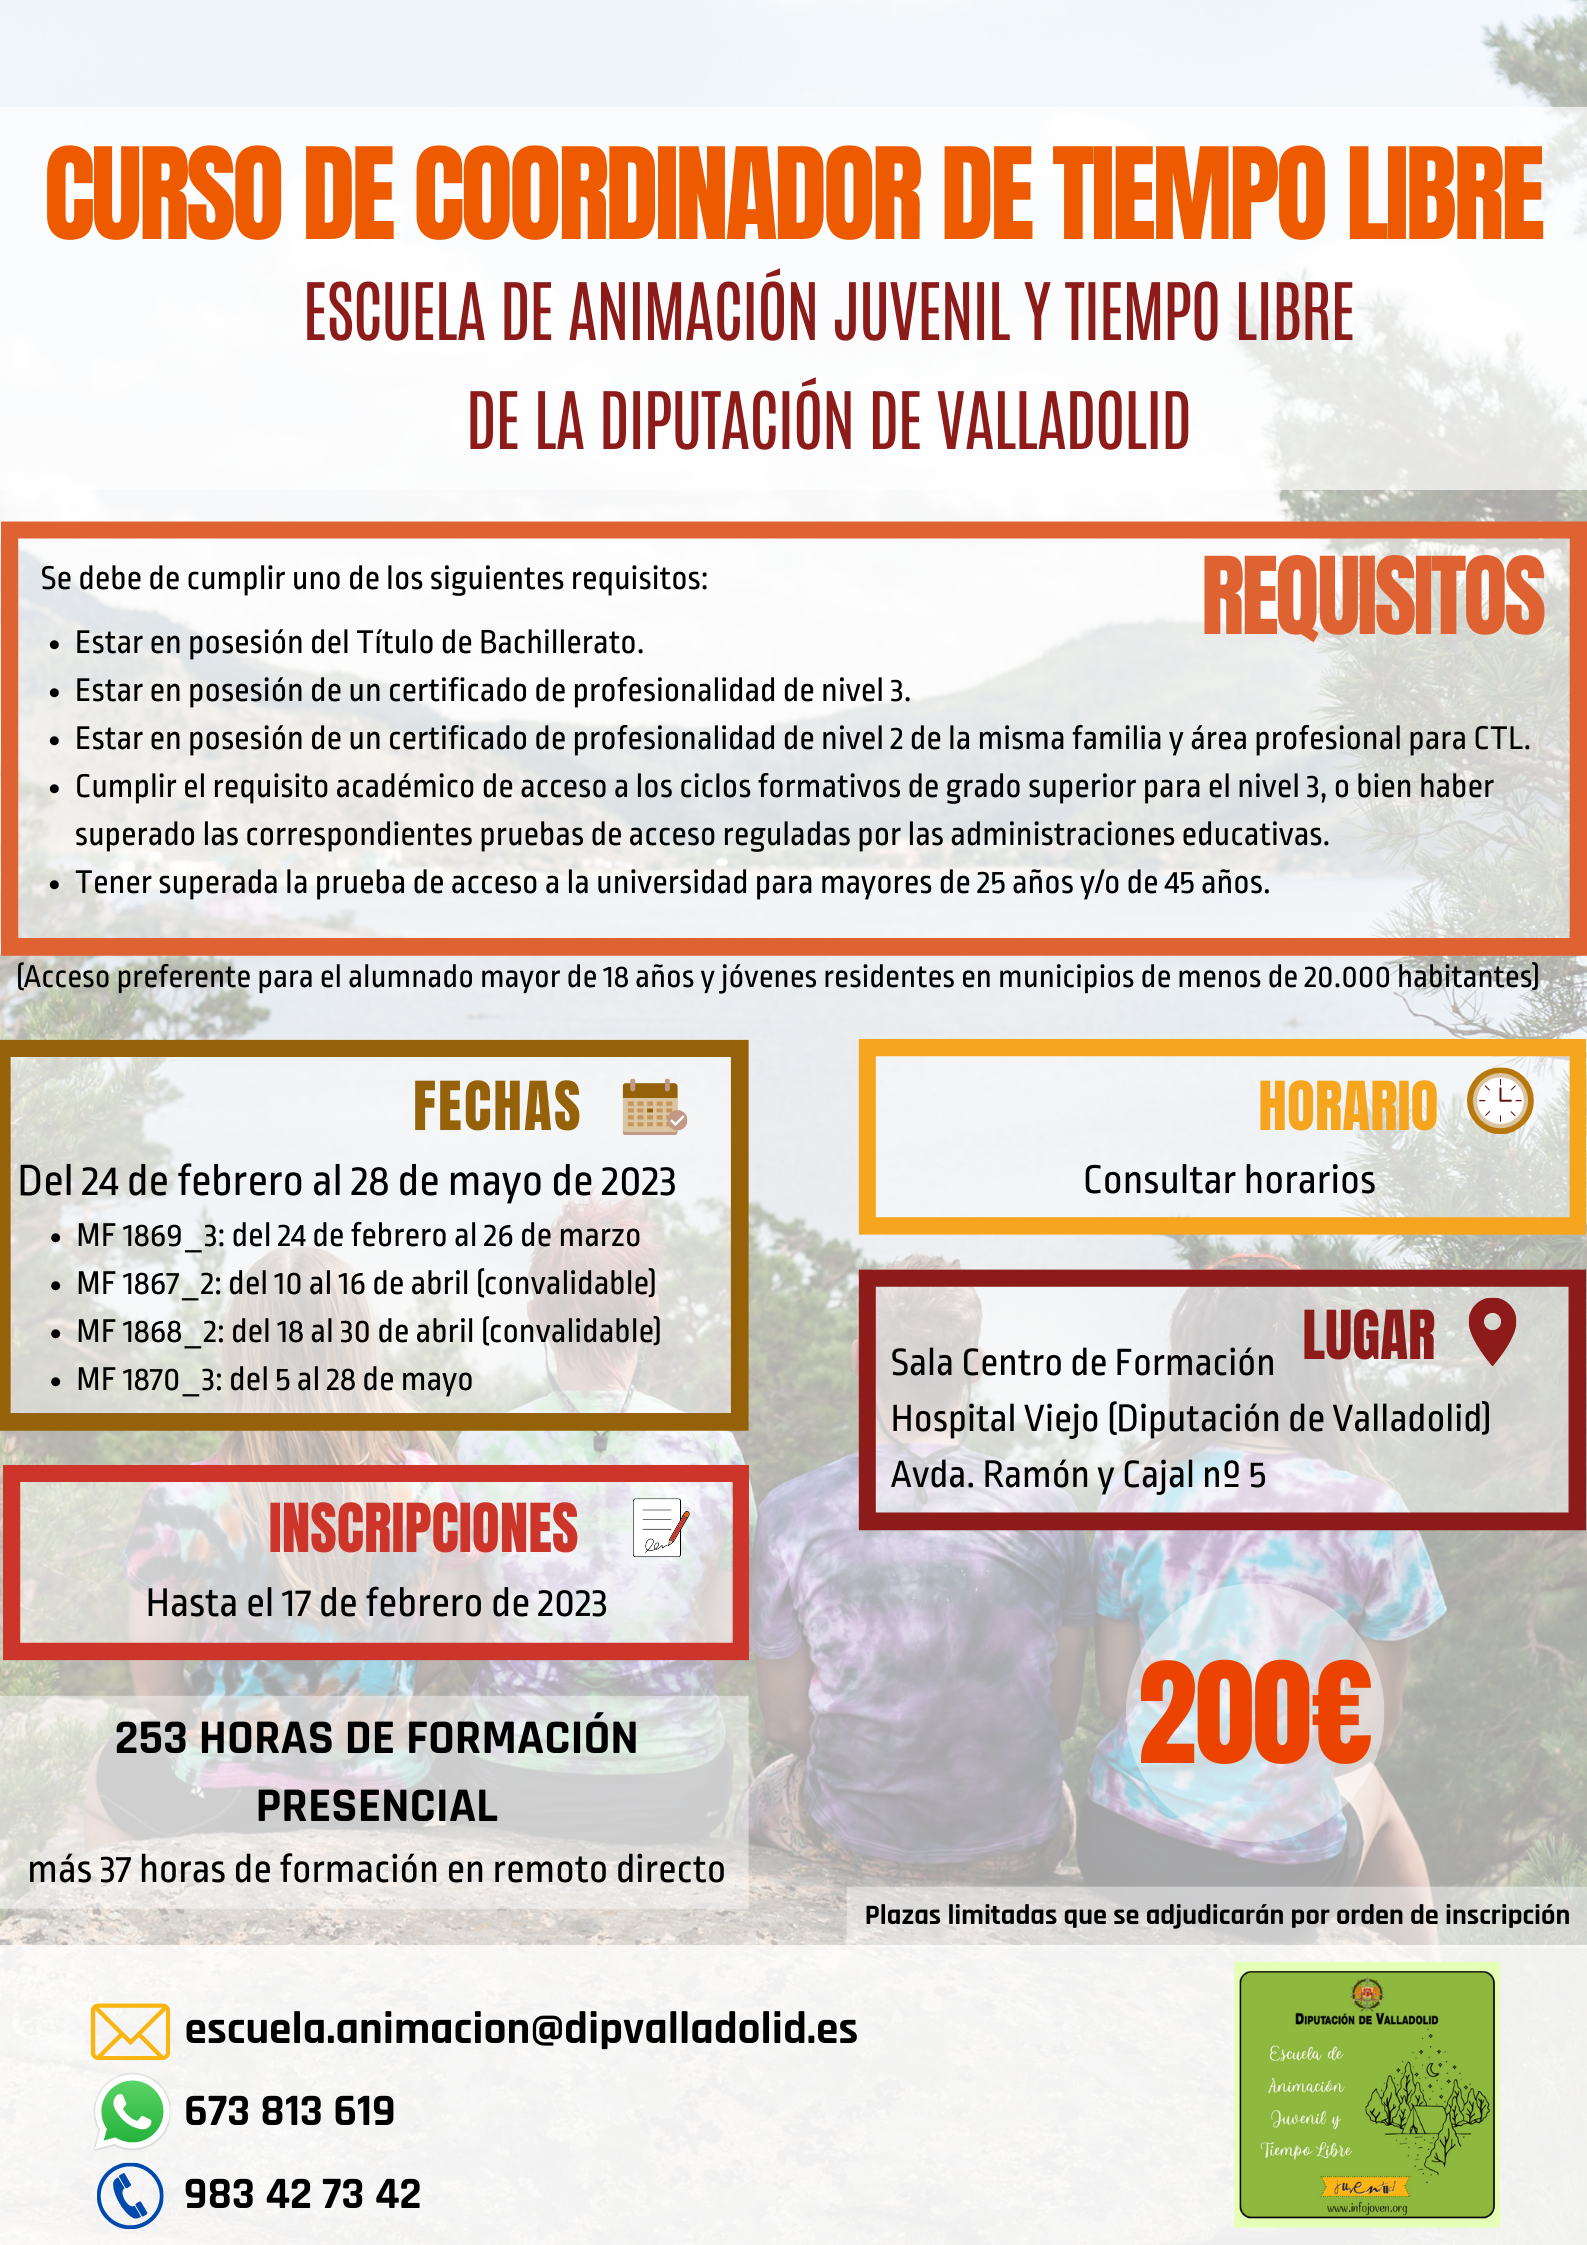 Aldea de San Miguel Informa - Servicio de comunicación vía web